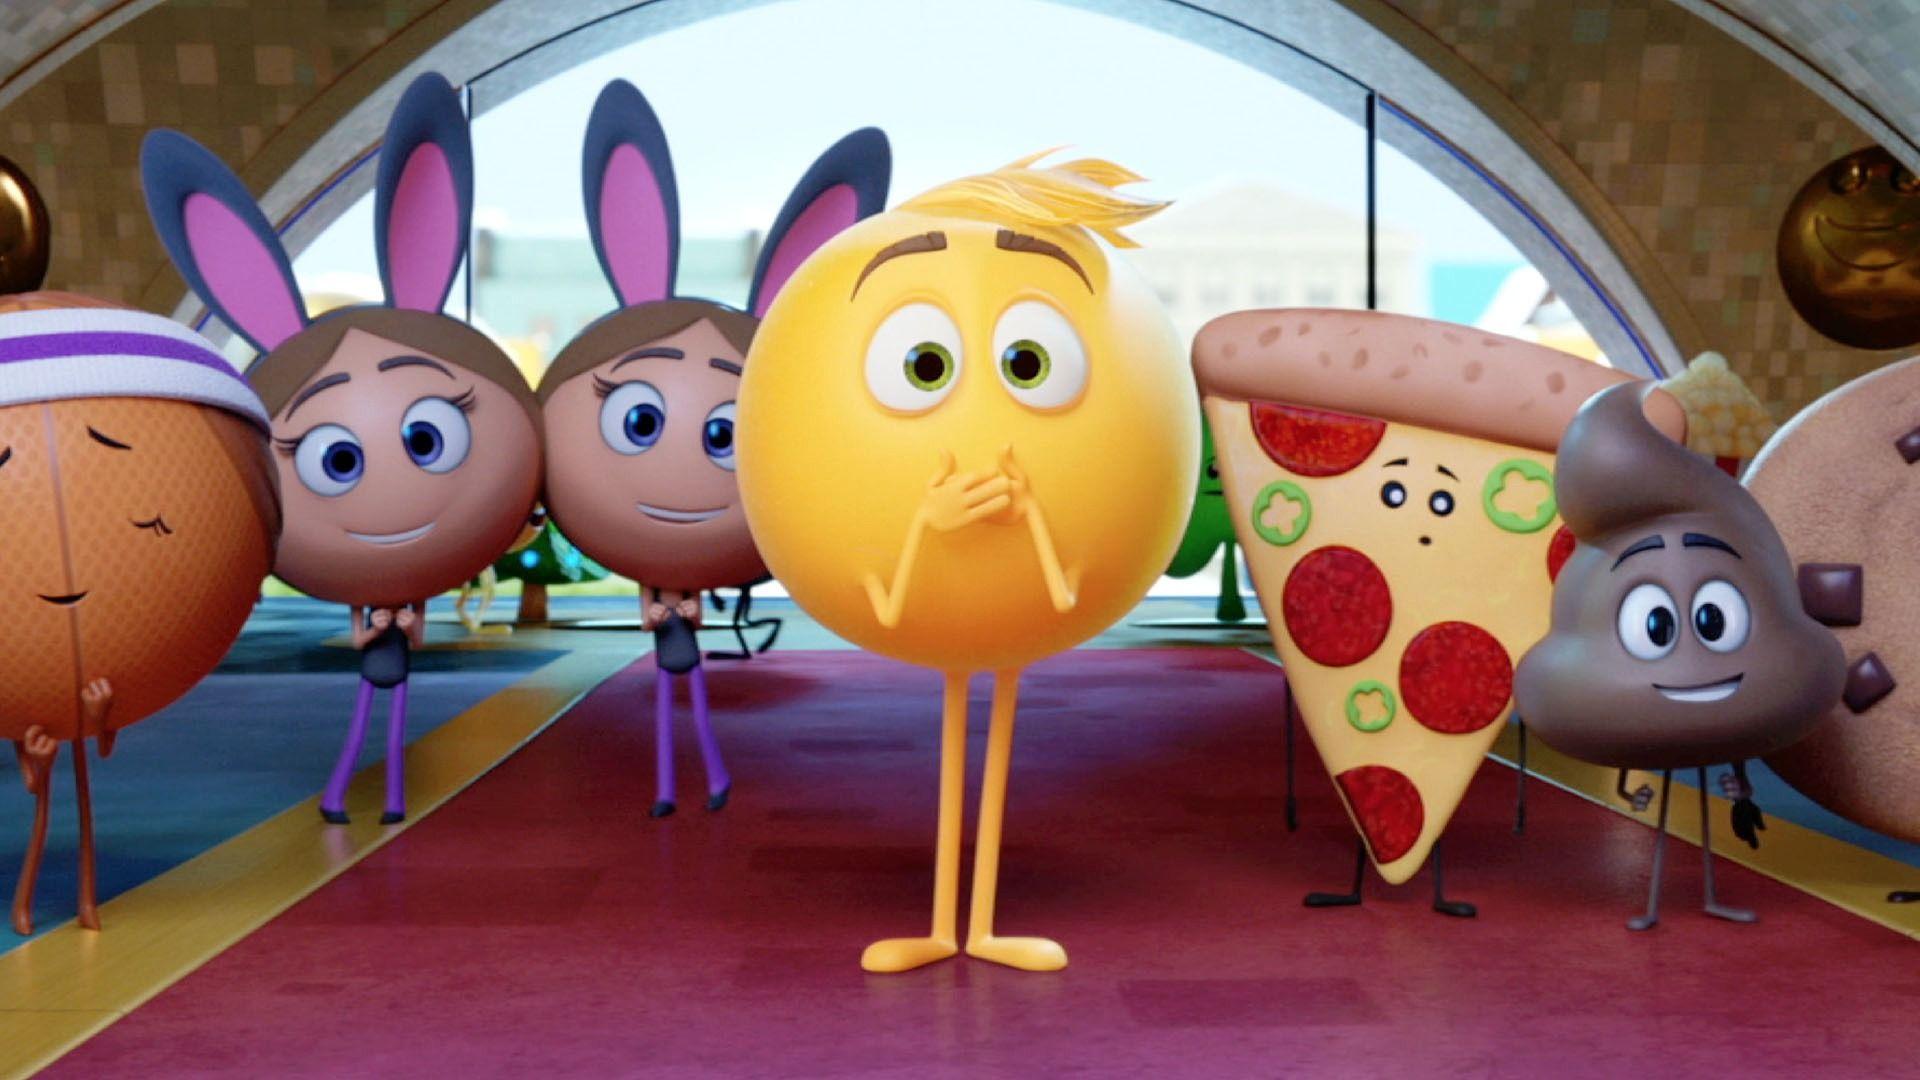 The Emoji Movie: The Emoji Movie Movie Clip Supervisor